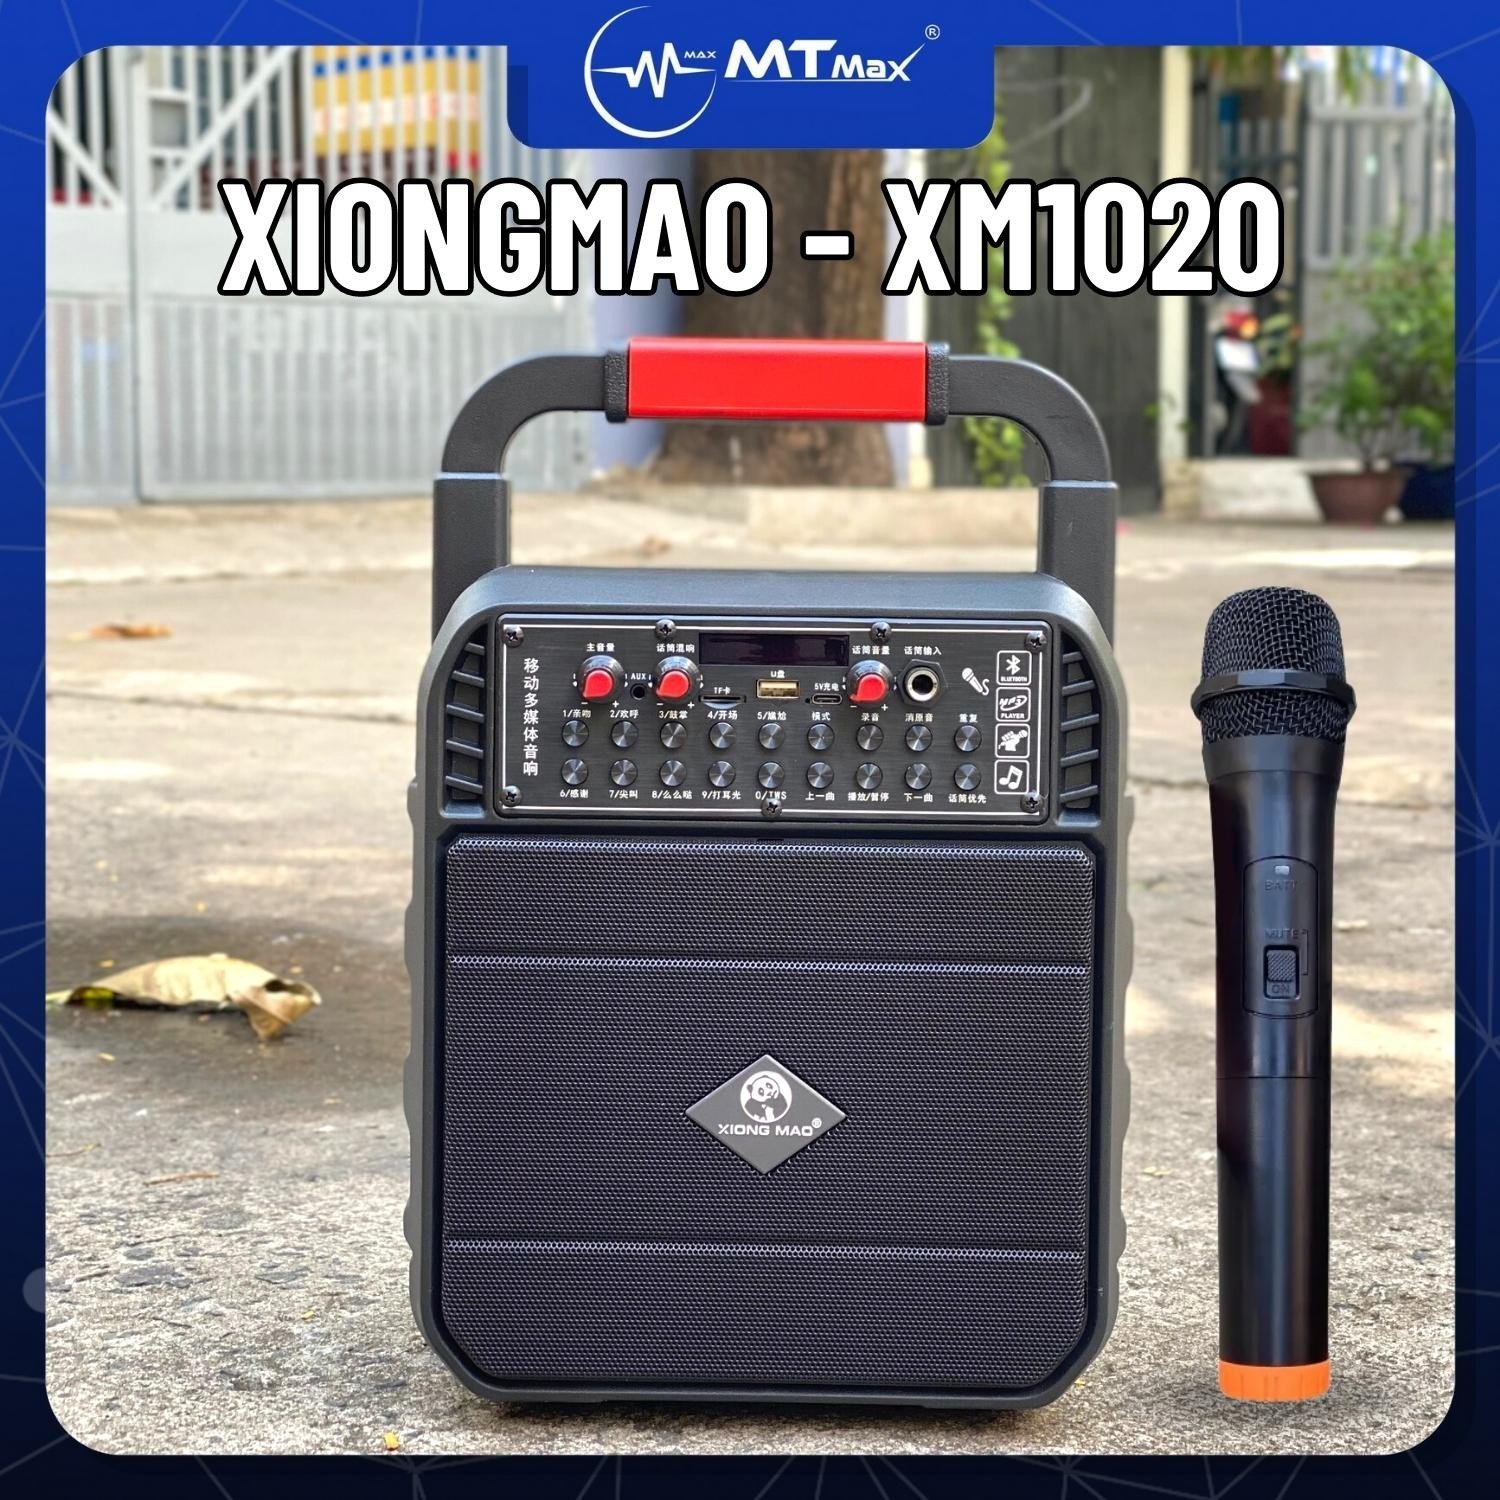 Loa Di Động Bluetooth Karaoke XIONG MAO XM1020 Kèm 1 Micro Không Dây, Thời Gian Sử Dụng Của Loa Từ 2 Đến 4 Giờ